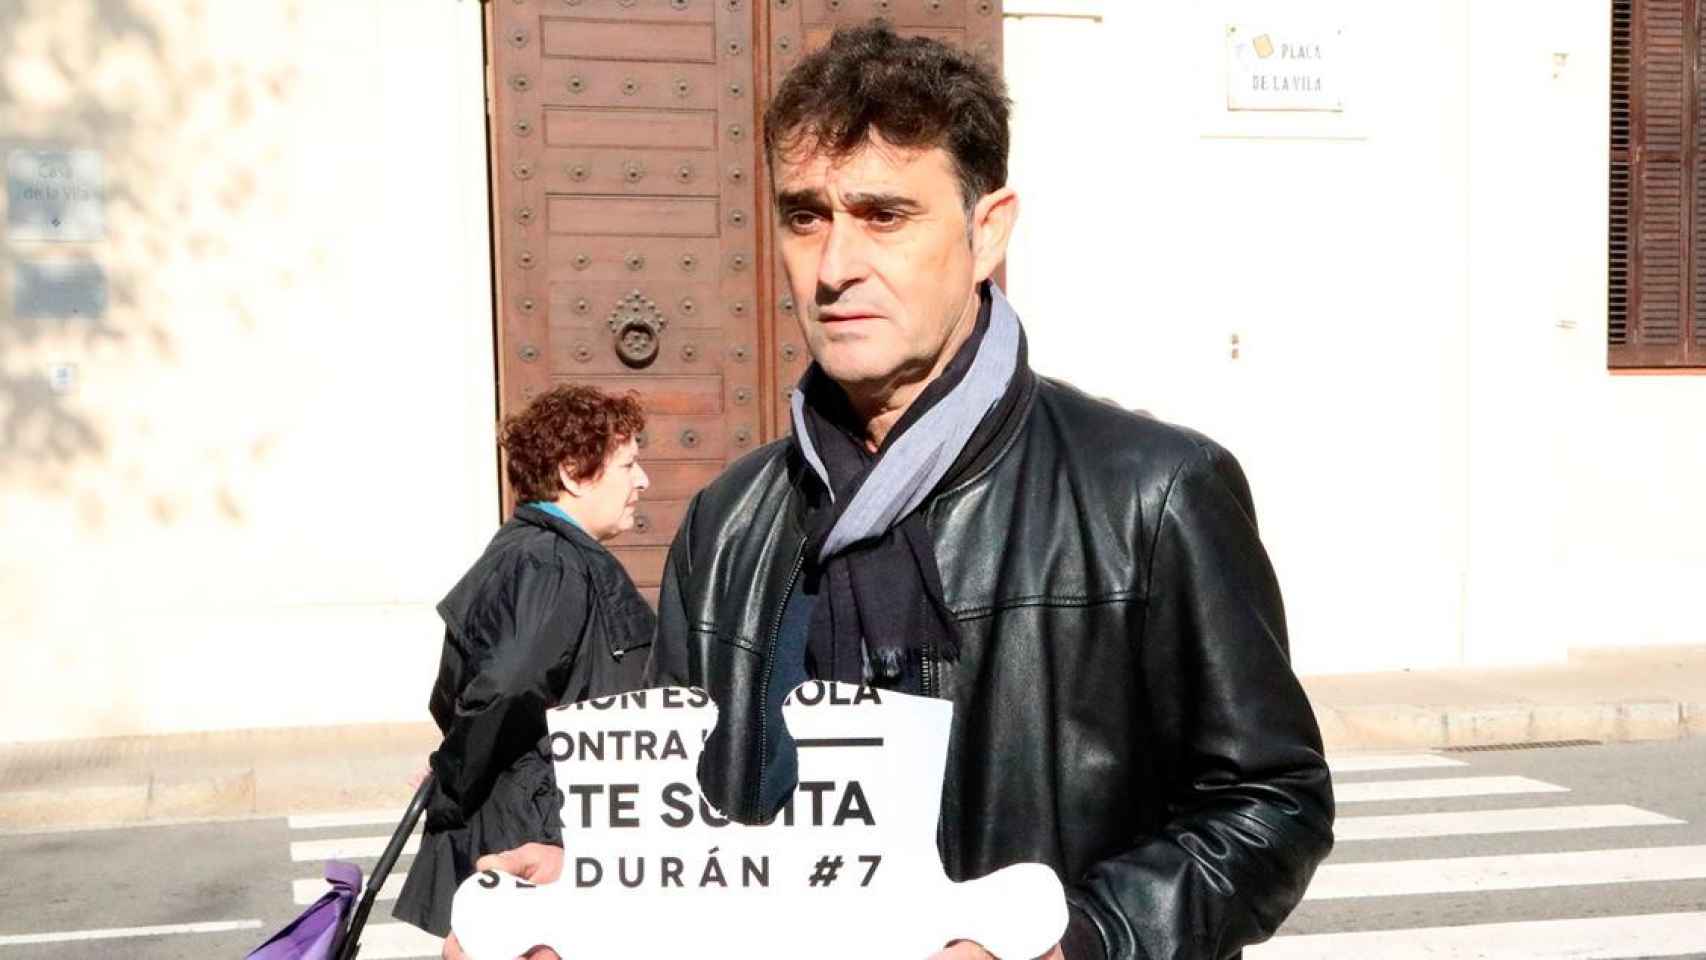 José Durán / ASOCIACIÓN CONTRA LA MUERTE SÚBITA JOSÉ DURÁN #7